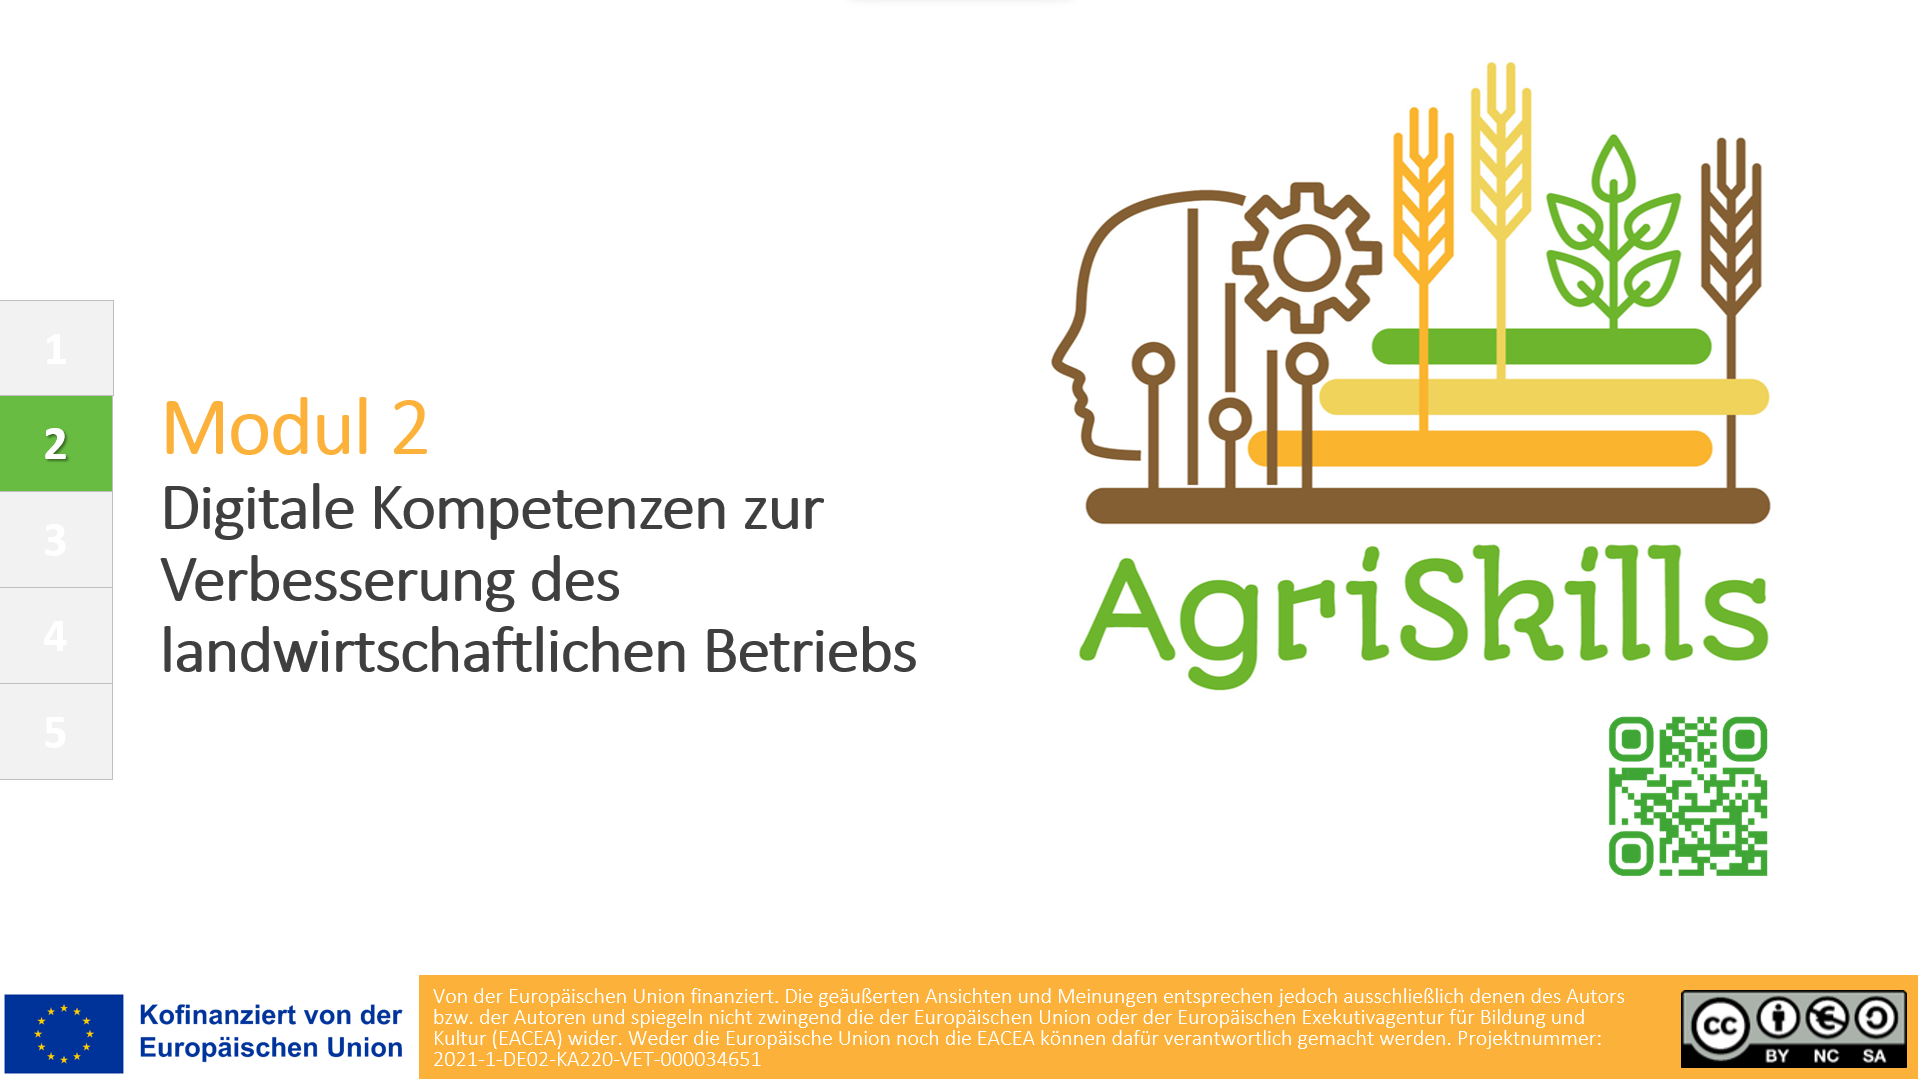 Digitale Kompetenzen zur Verbesserung des landwirtschaftlichen Betriebs